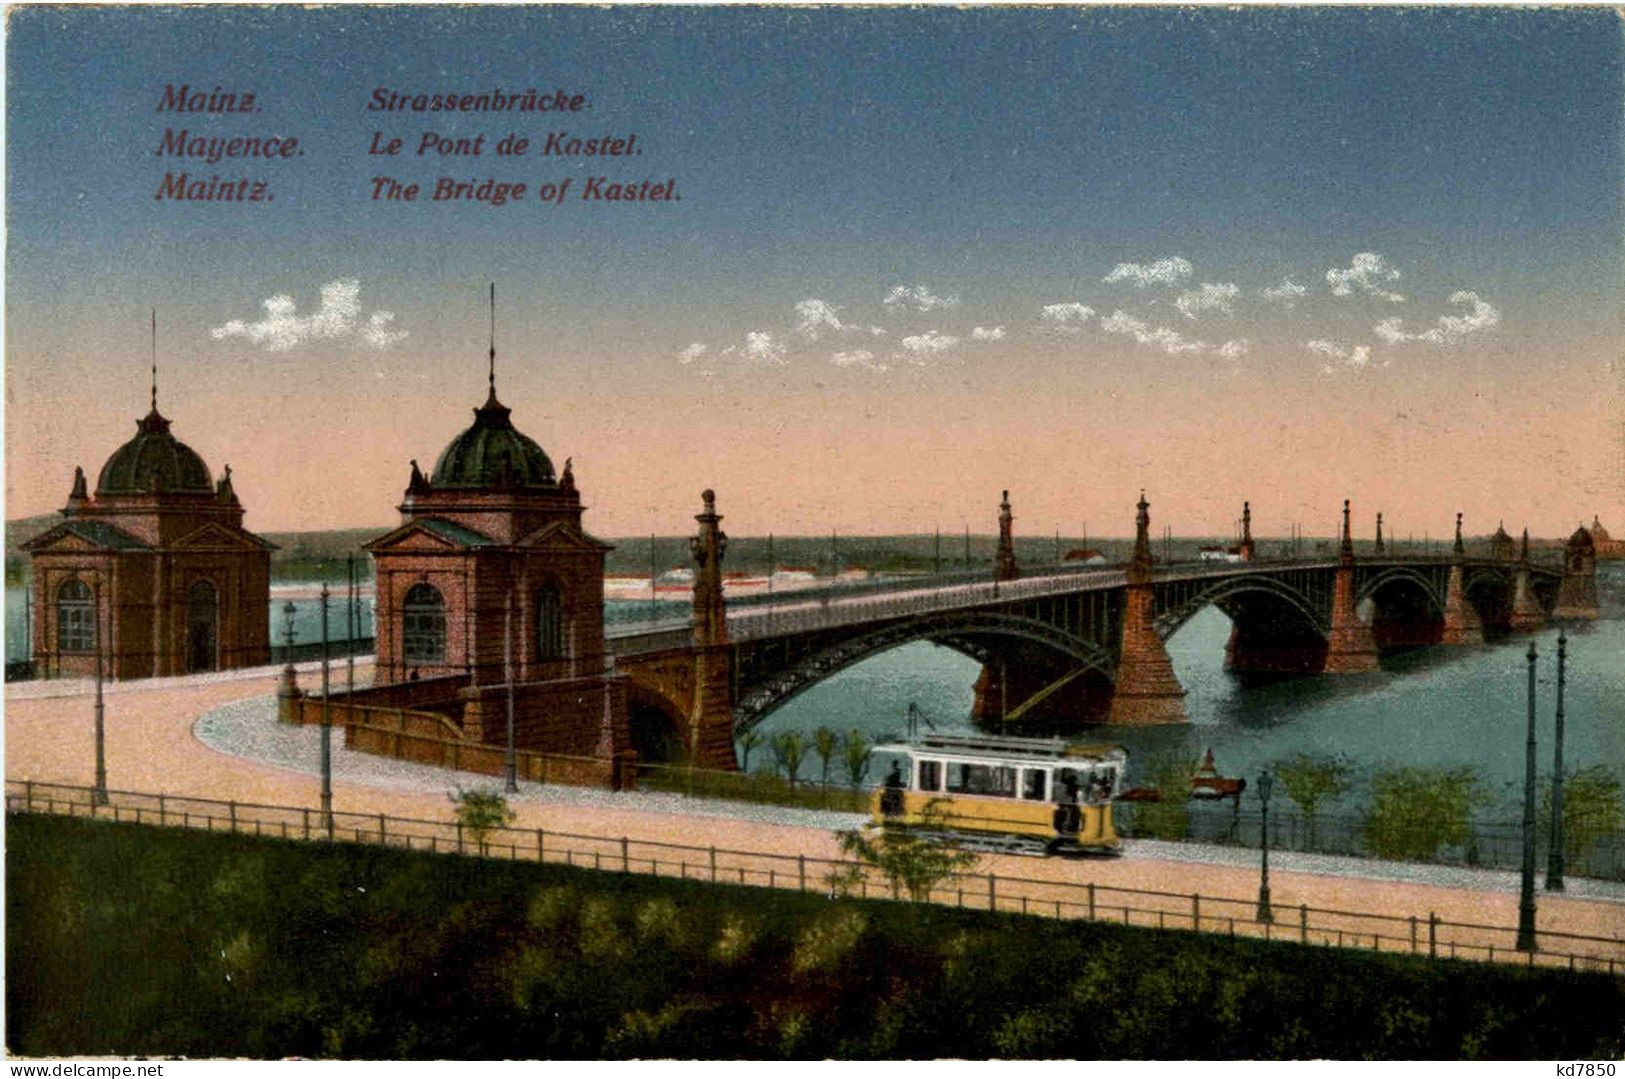 Mainz - Strassenbrücke - Mainz